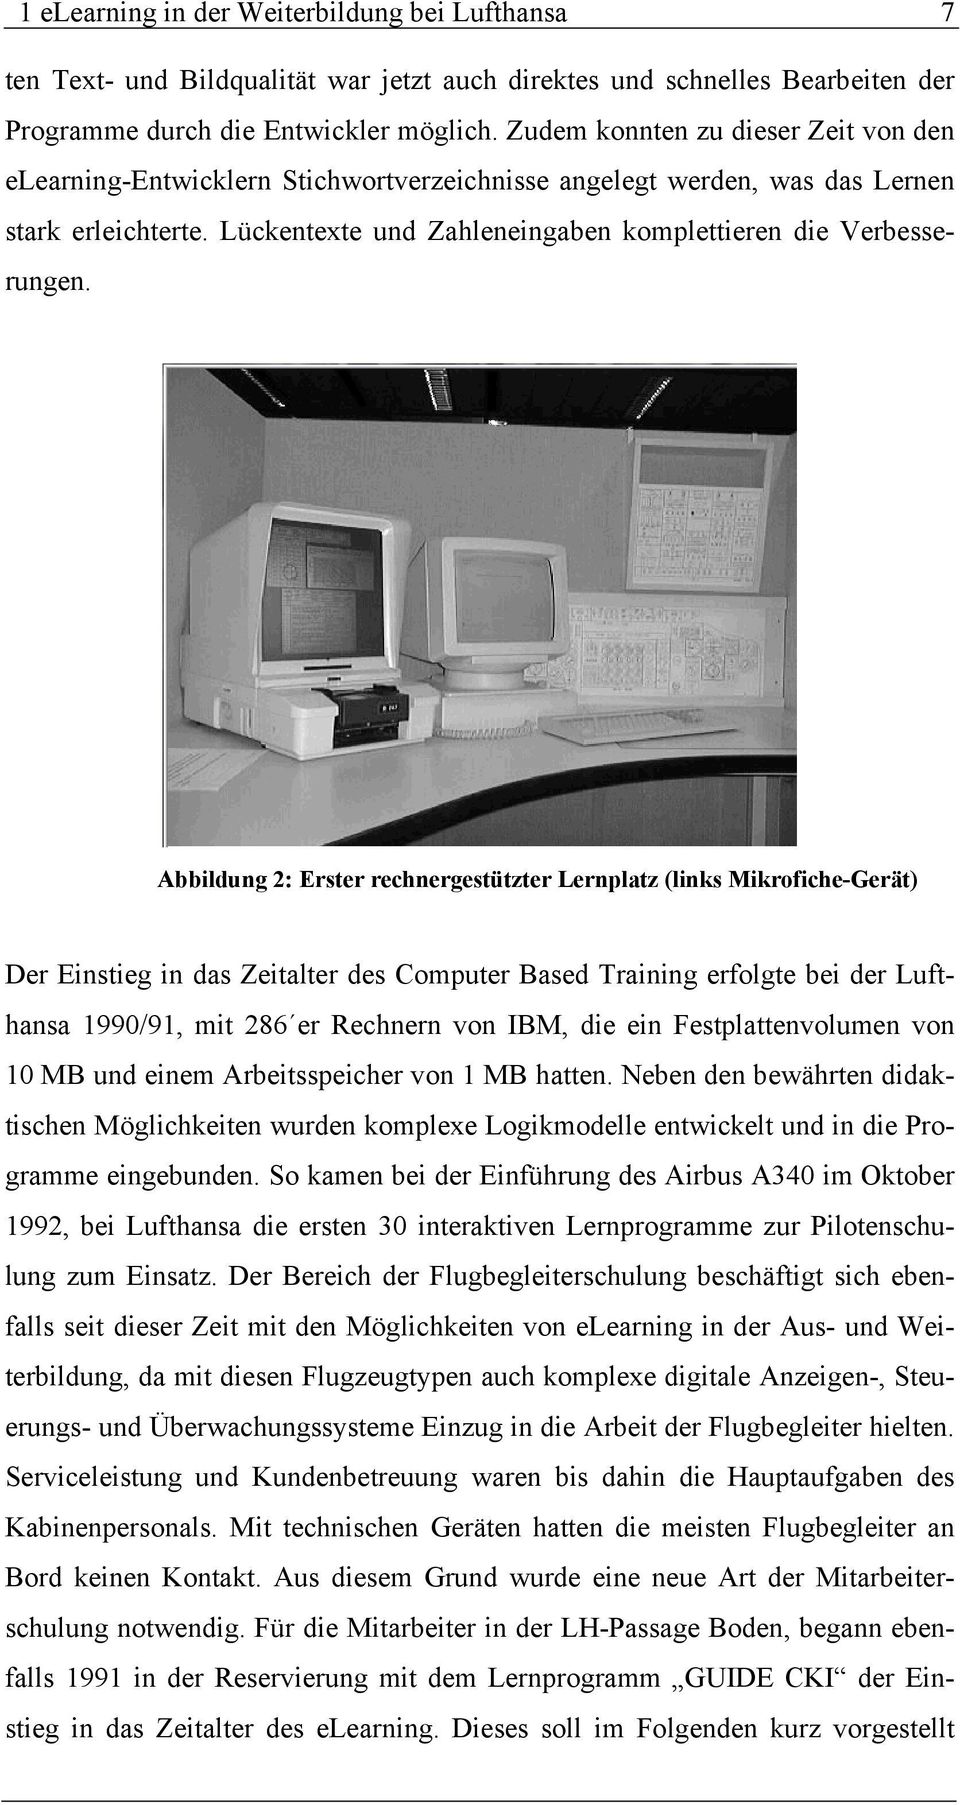 Abbildung 2: Erster rechnergestützter Lernplatz (links Mikrofiche-Gerät) Der Einstieg in das Zeitalter des Computer Based Training erfolgte bei der Lufthansa 1990/91, mit 286 er Rechnern von IBM, die